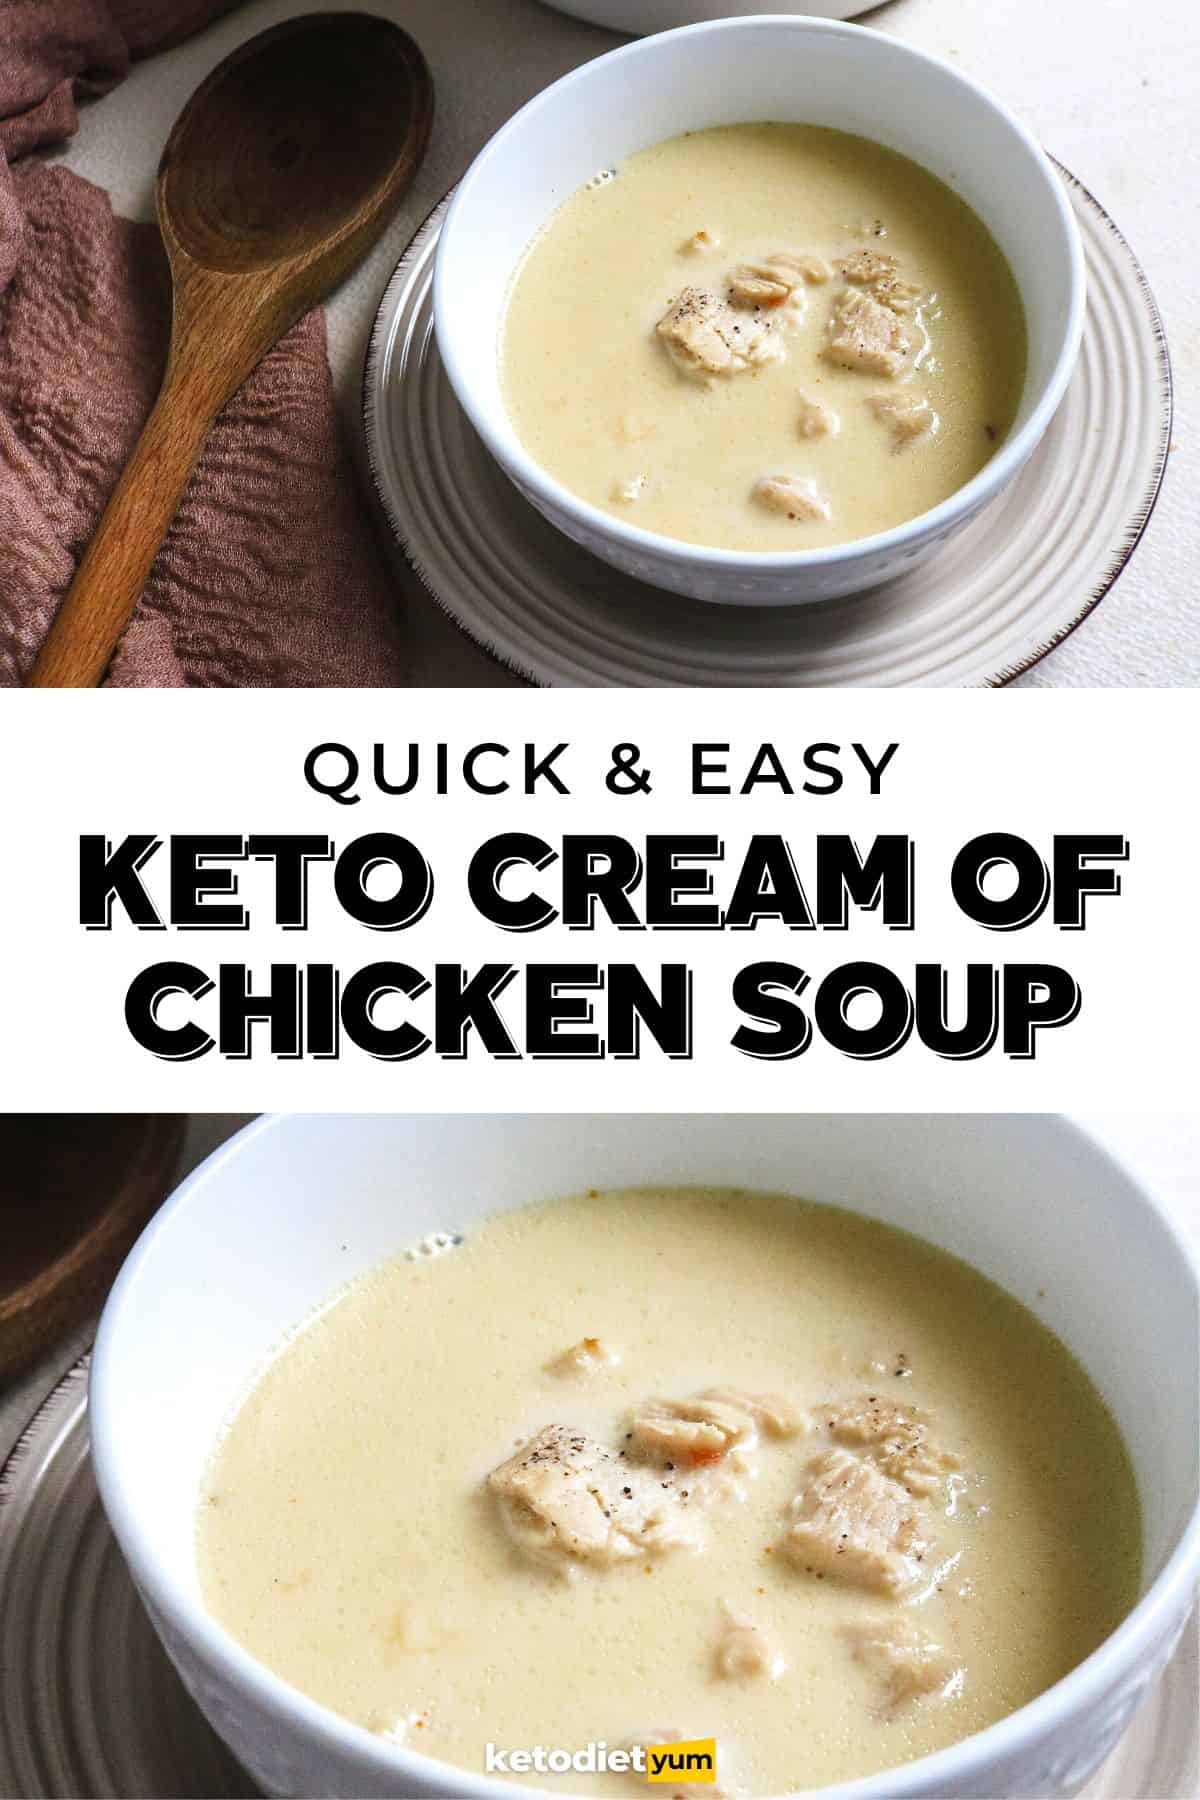 Keto Cream of Chicken Soup